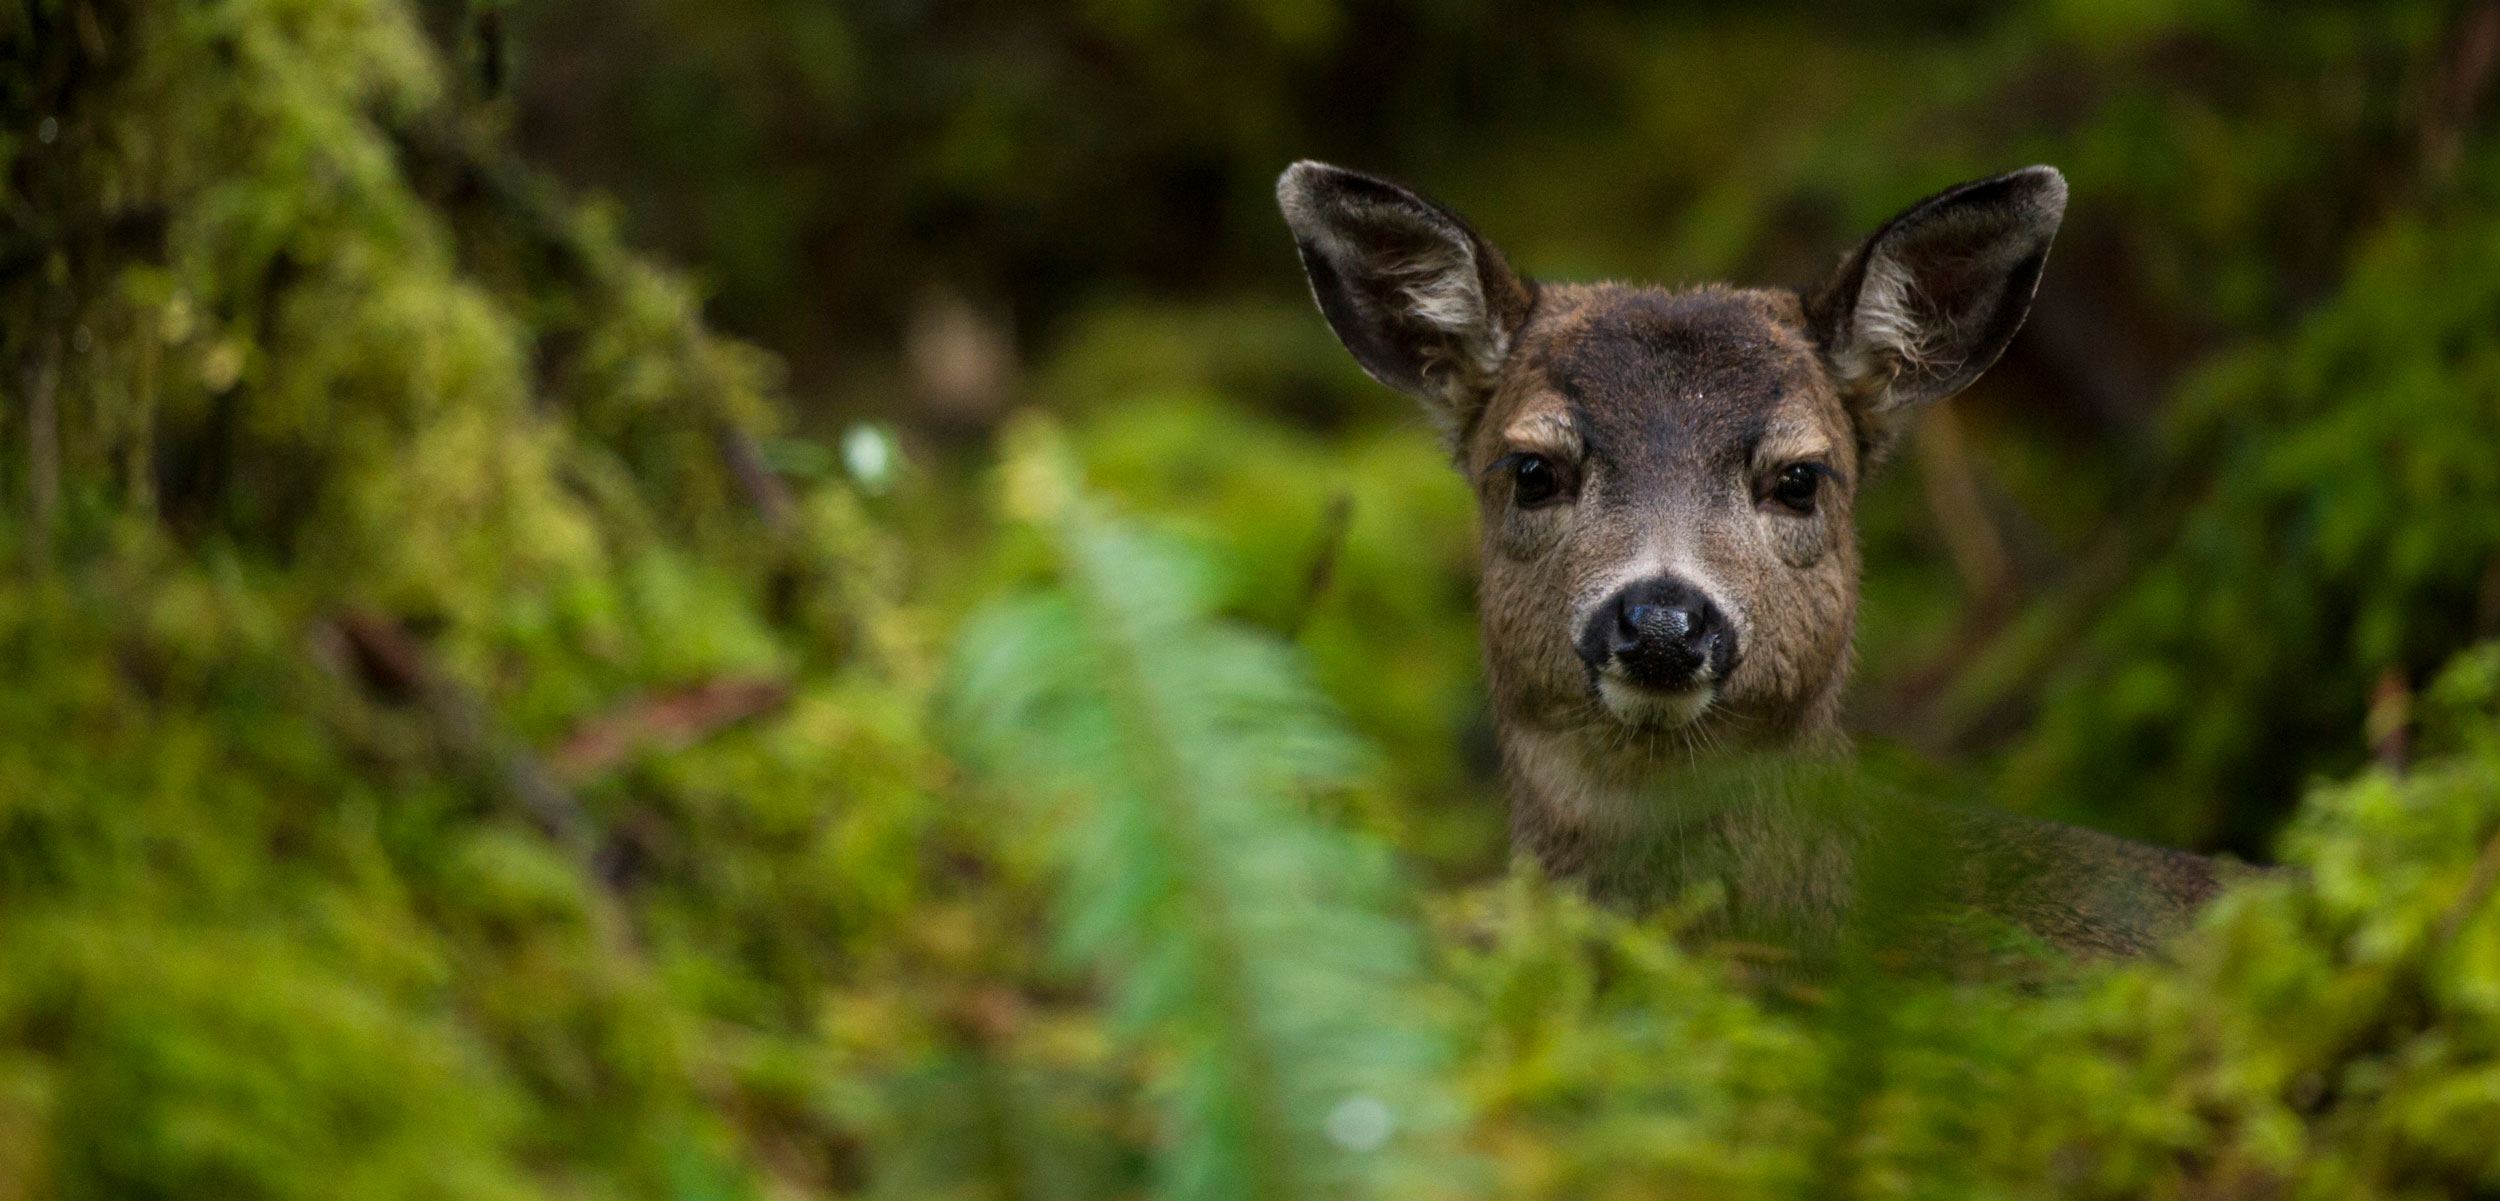 Deer Wars: The Forest Awakens | Hakai Magazine